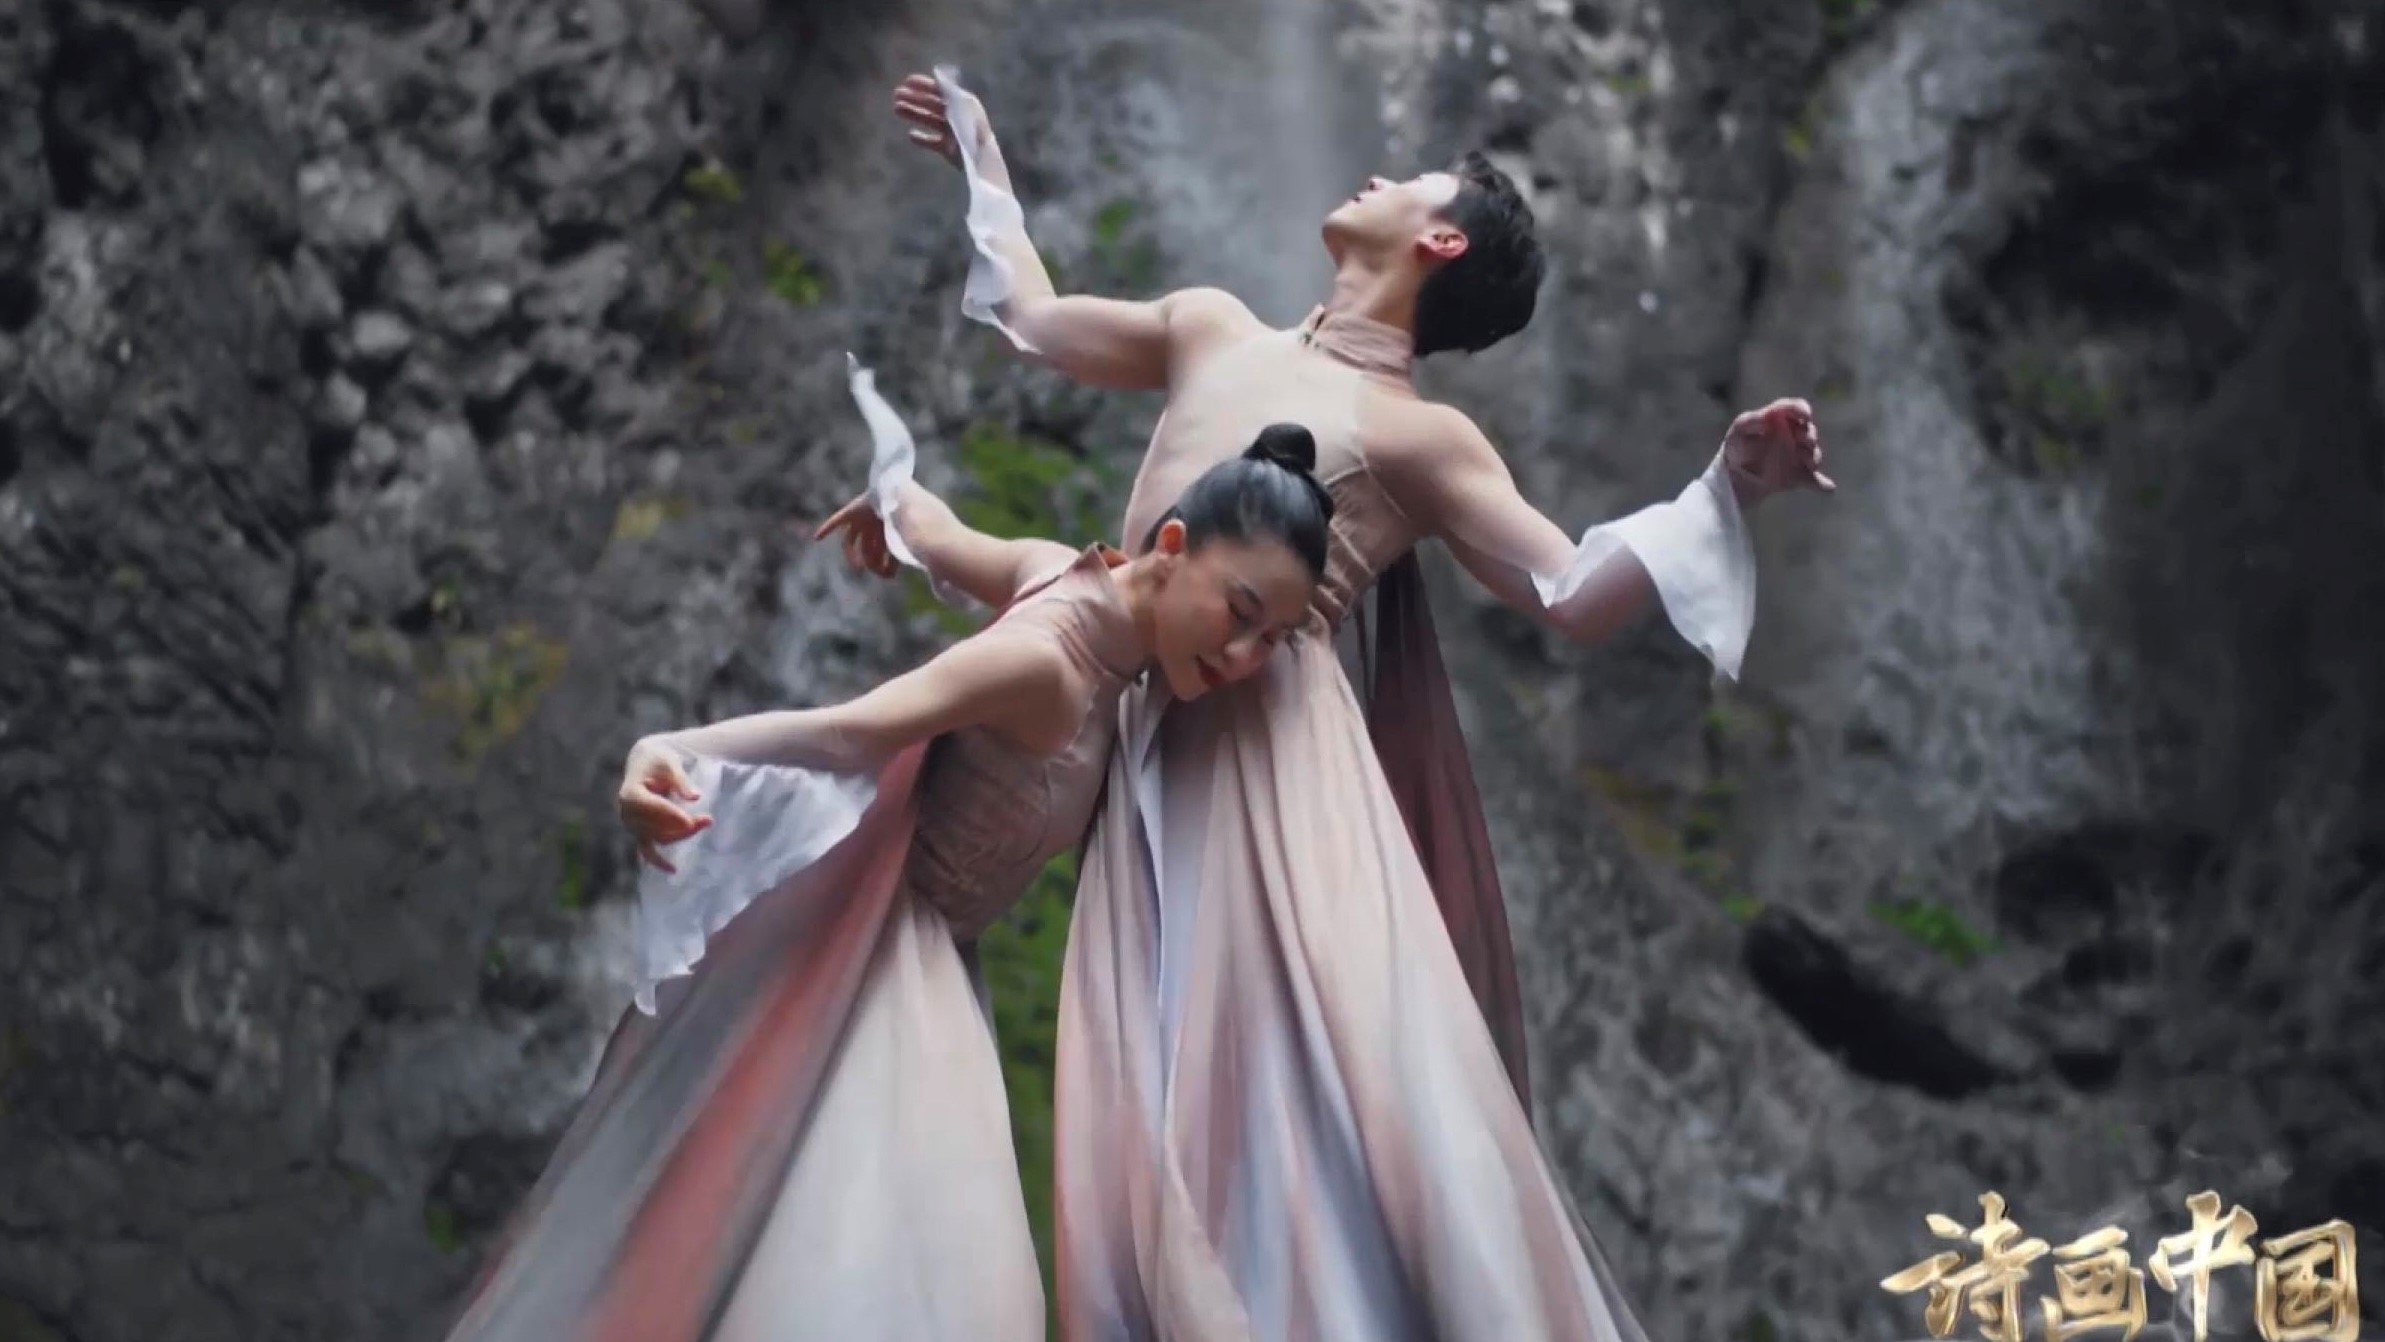 朱涵和他的舞伴在峡谷底部跳舞。  /中国环球电视网